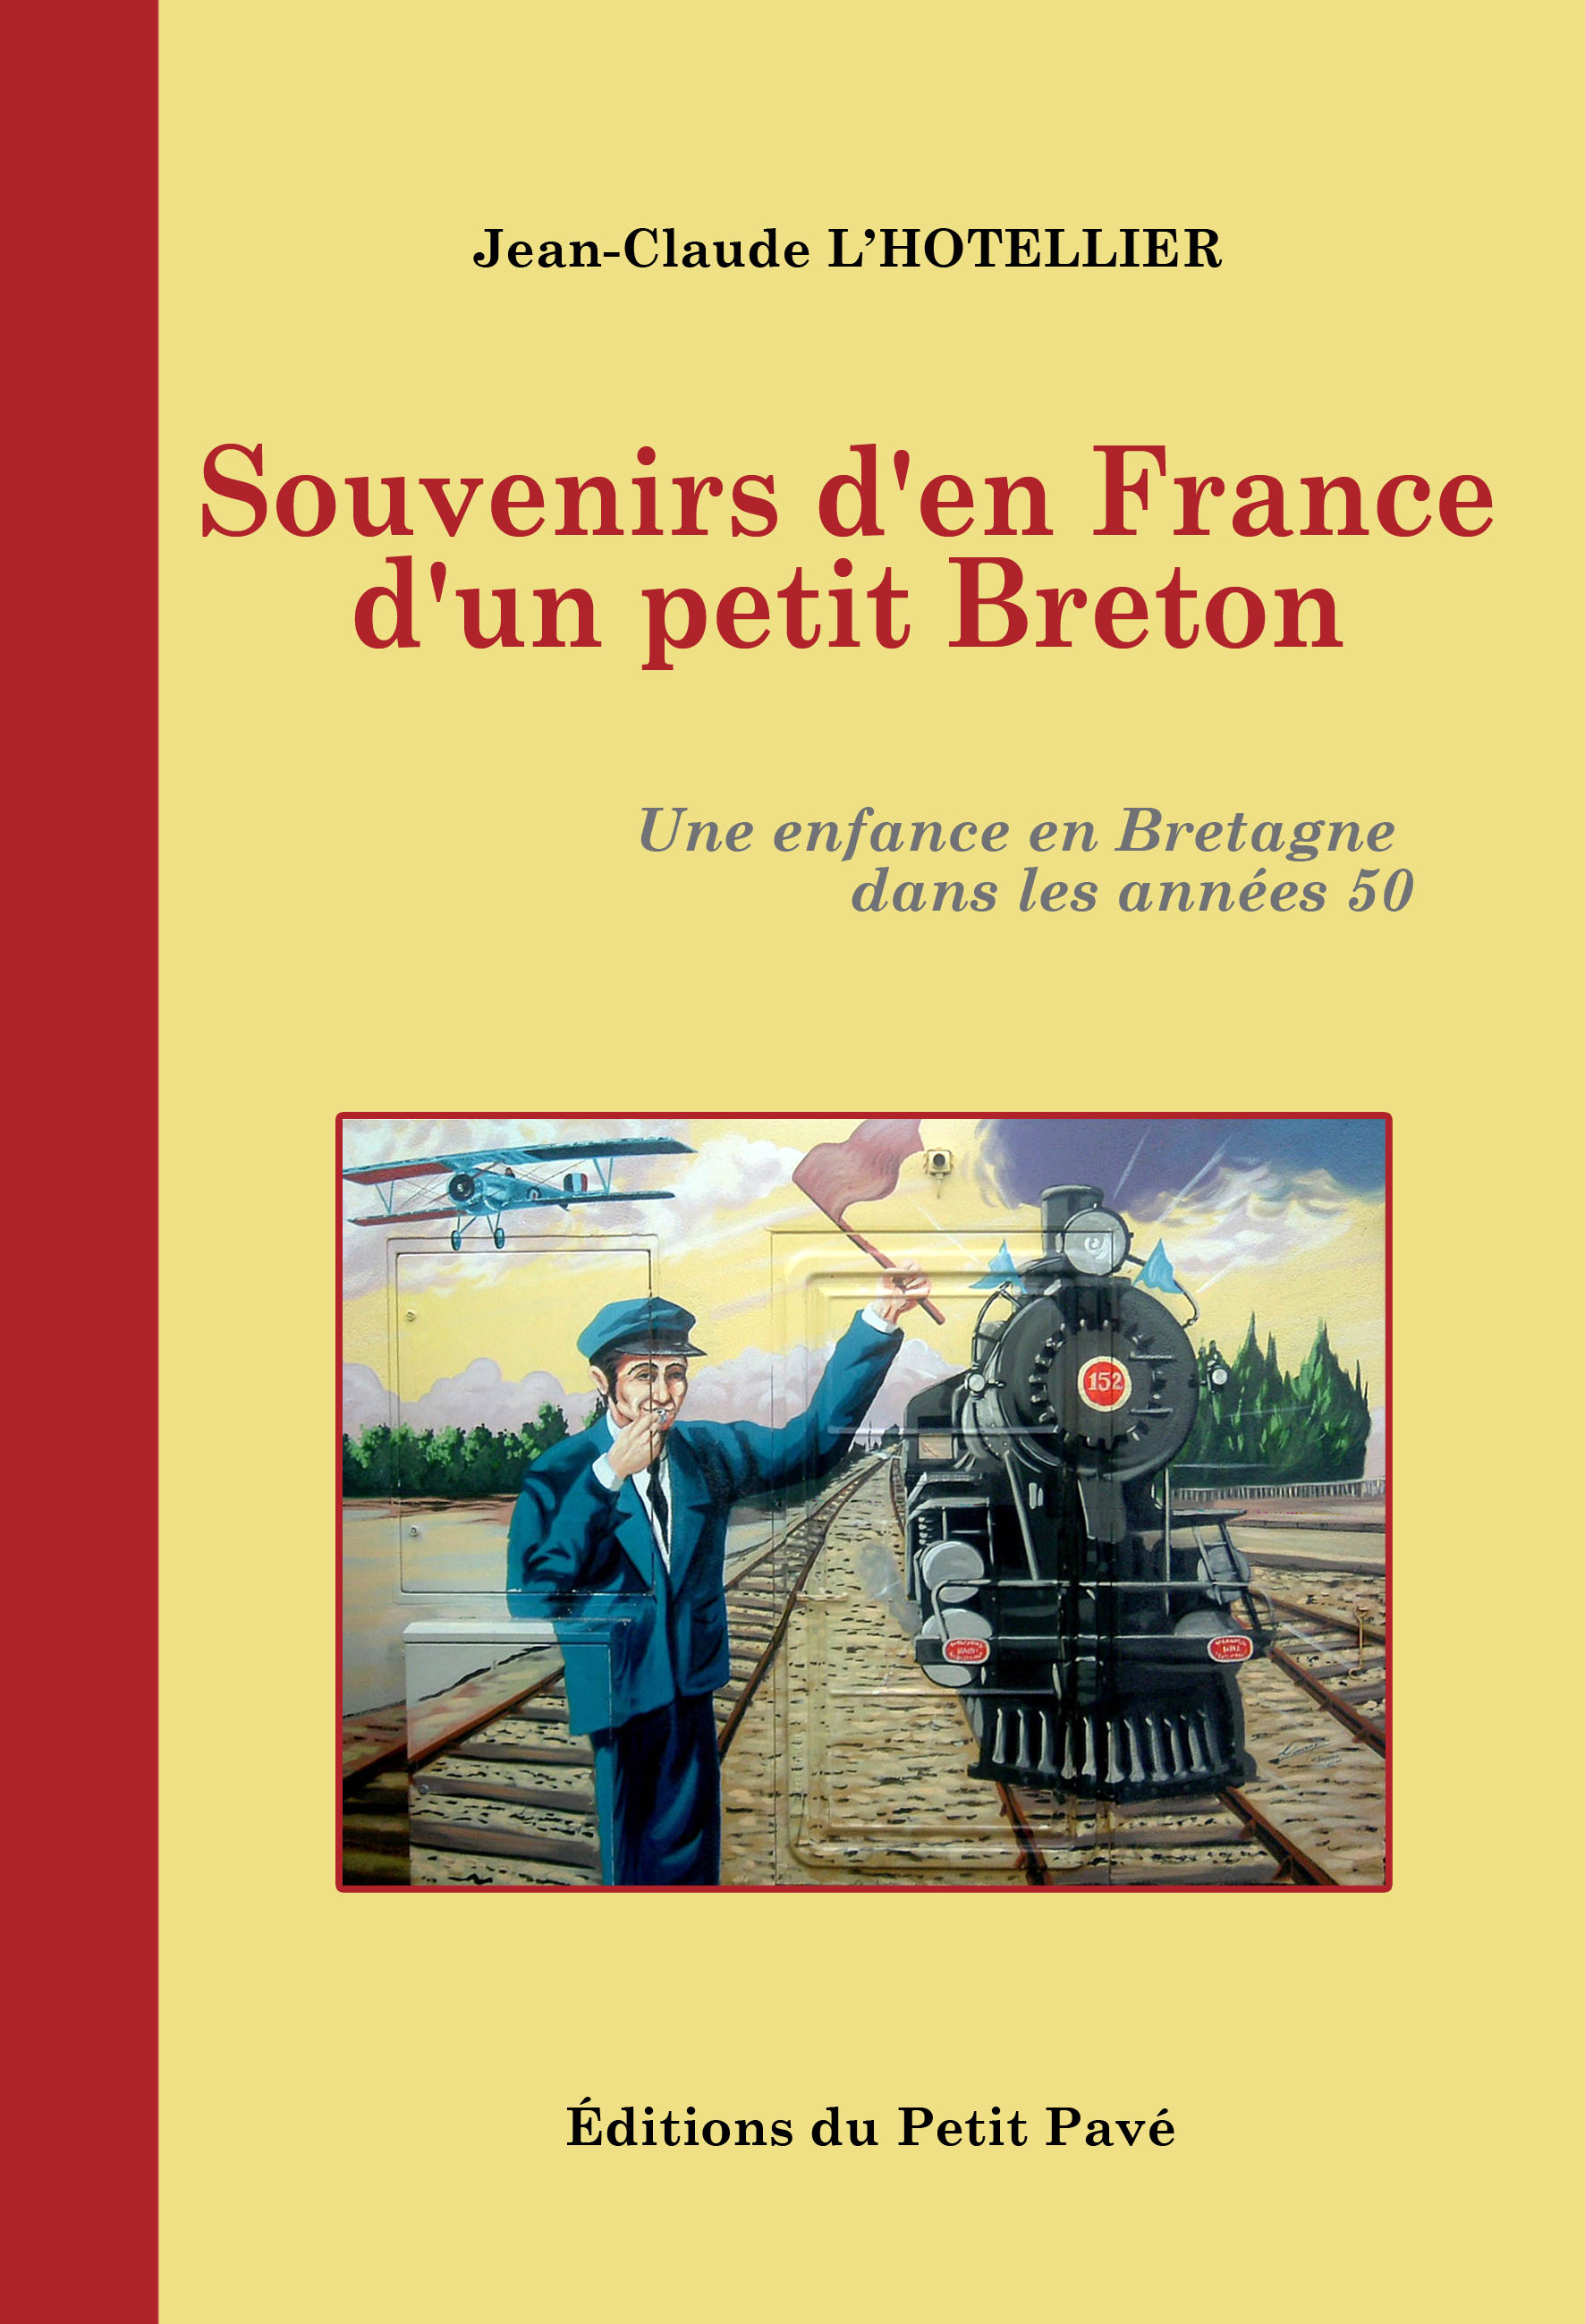 Souvenirs den France dun petit Breton - Photo souvenirs-en-france-2.jpg